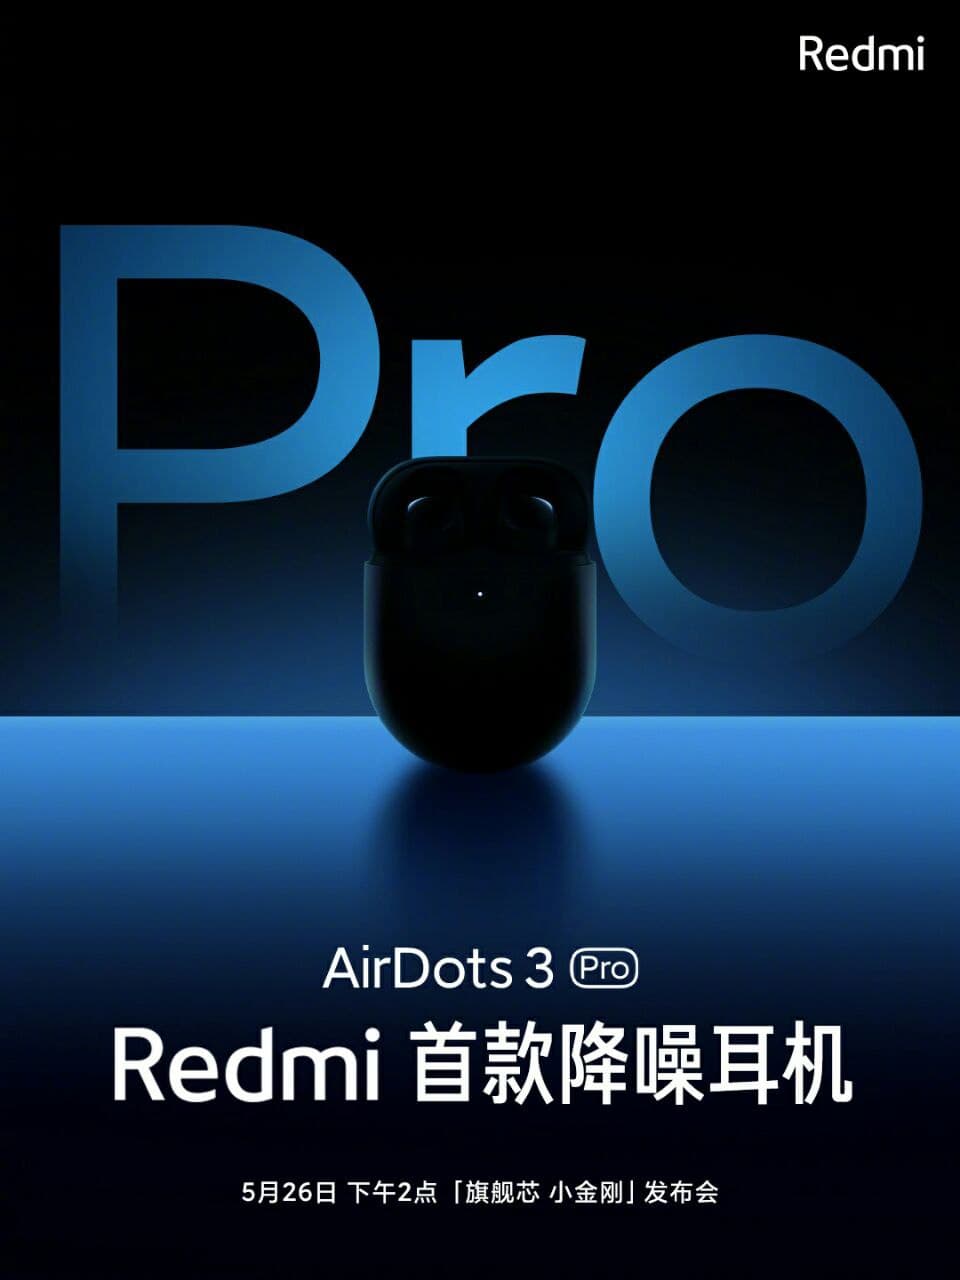 Неожиданные Redmi AirDots 3 Pro: главные фишки завтрашней новинки